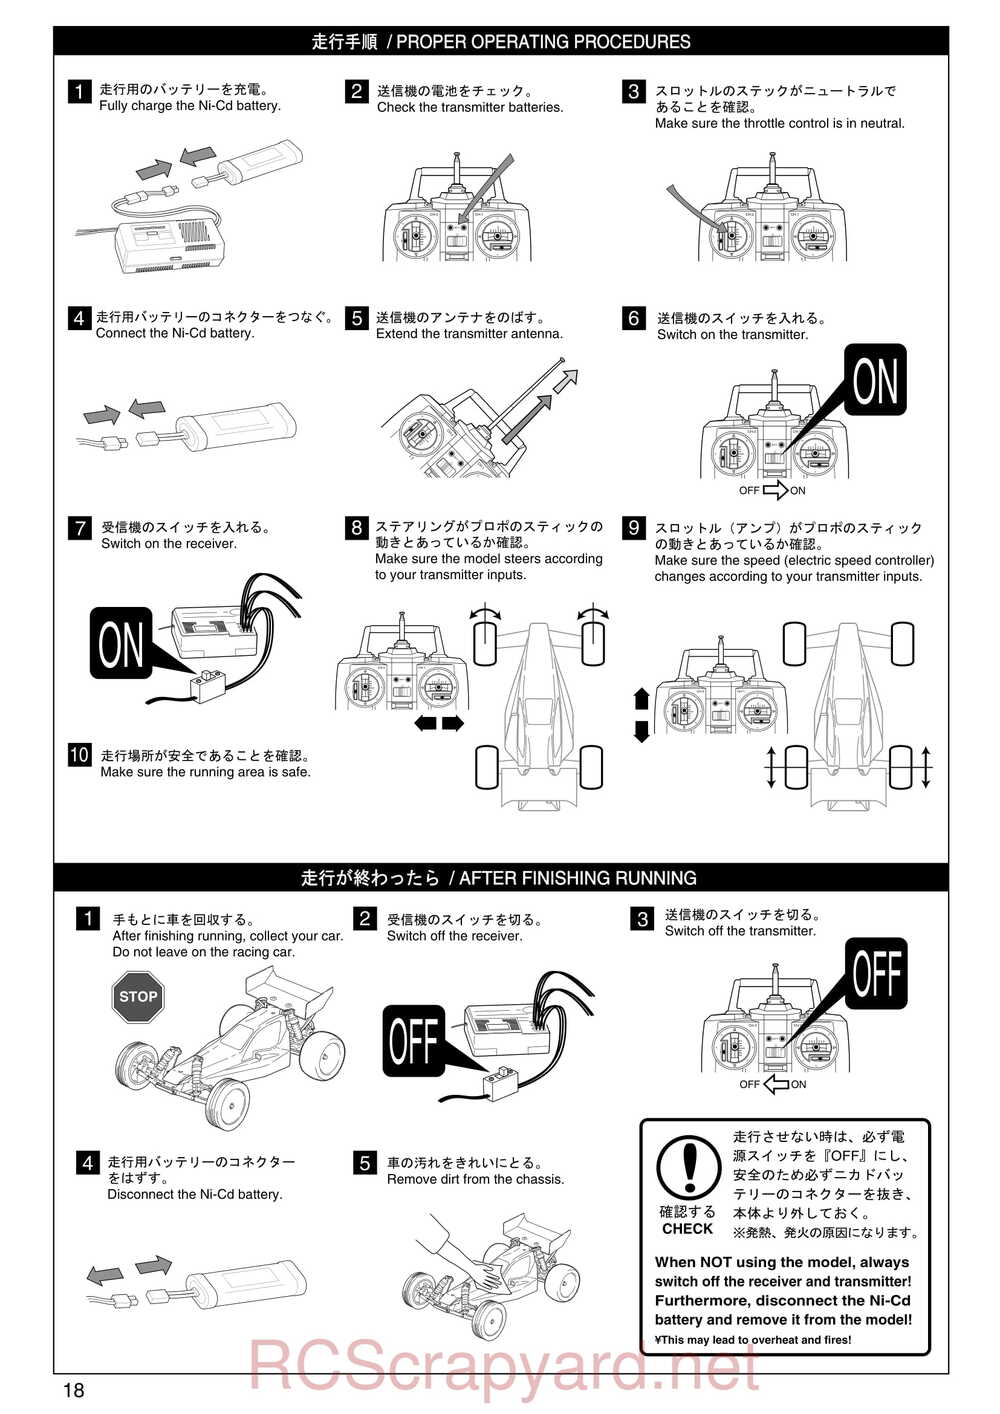 Kyosho - 30075 - Lazer-ZX-S-Evo - Manual - Page 18